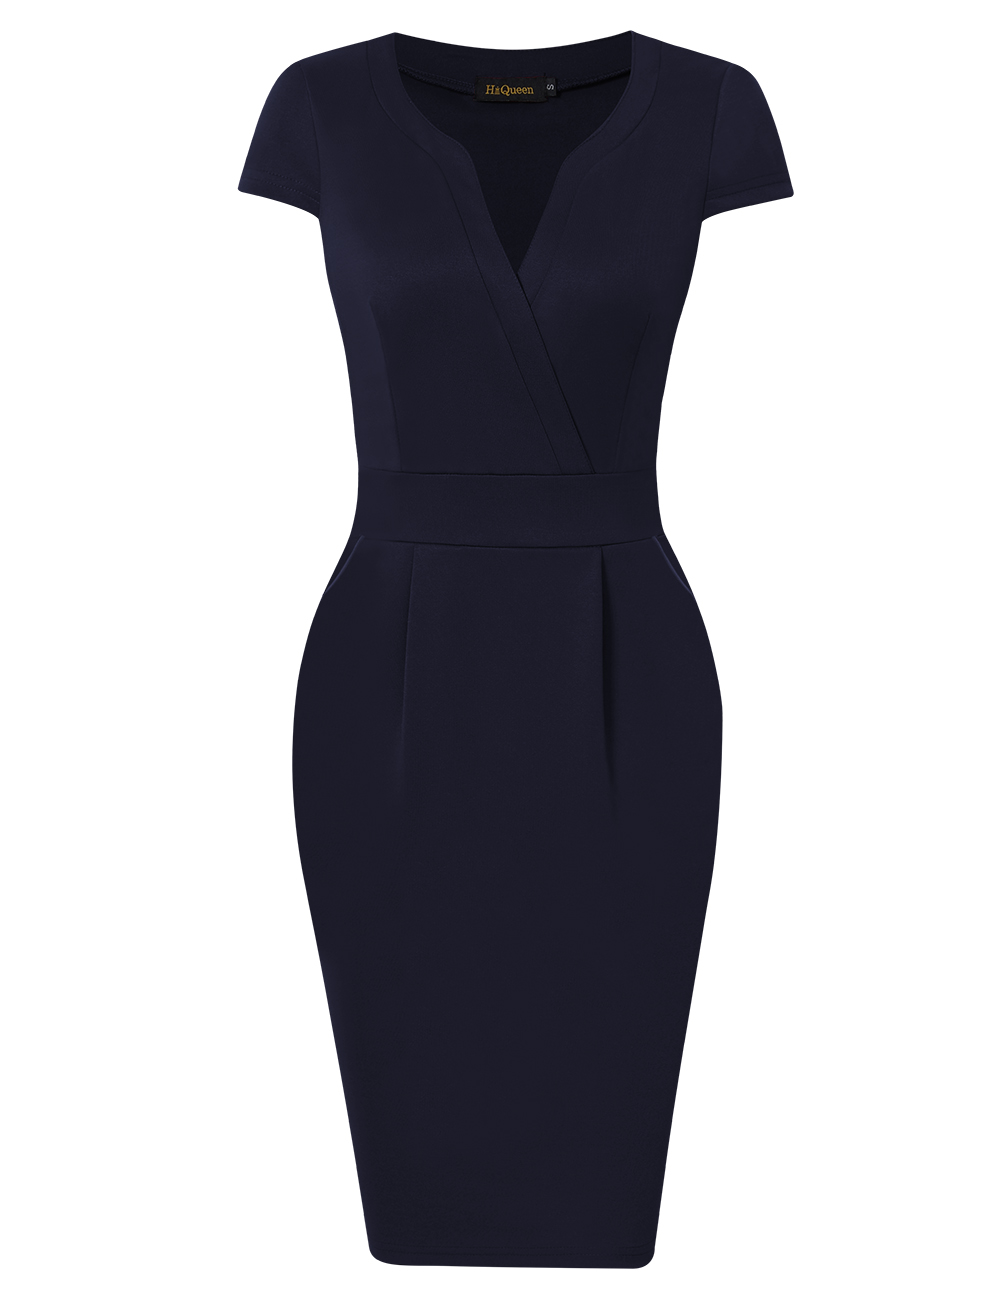 [US Direct] HiQueen  Women's V-collar Slim Waisted Knee-length Dress Short Sleeve Elegant Cocktail Dress